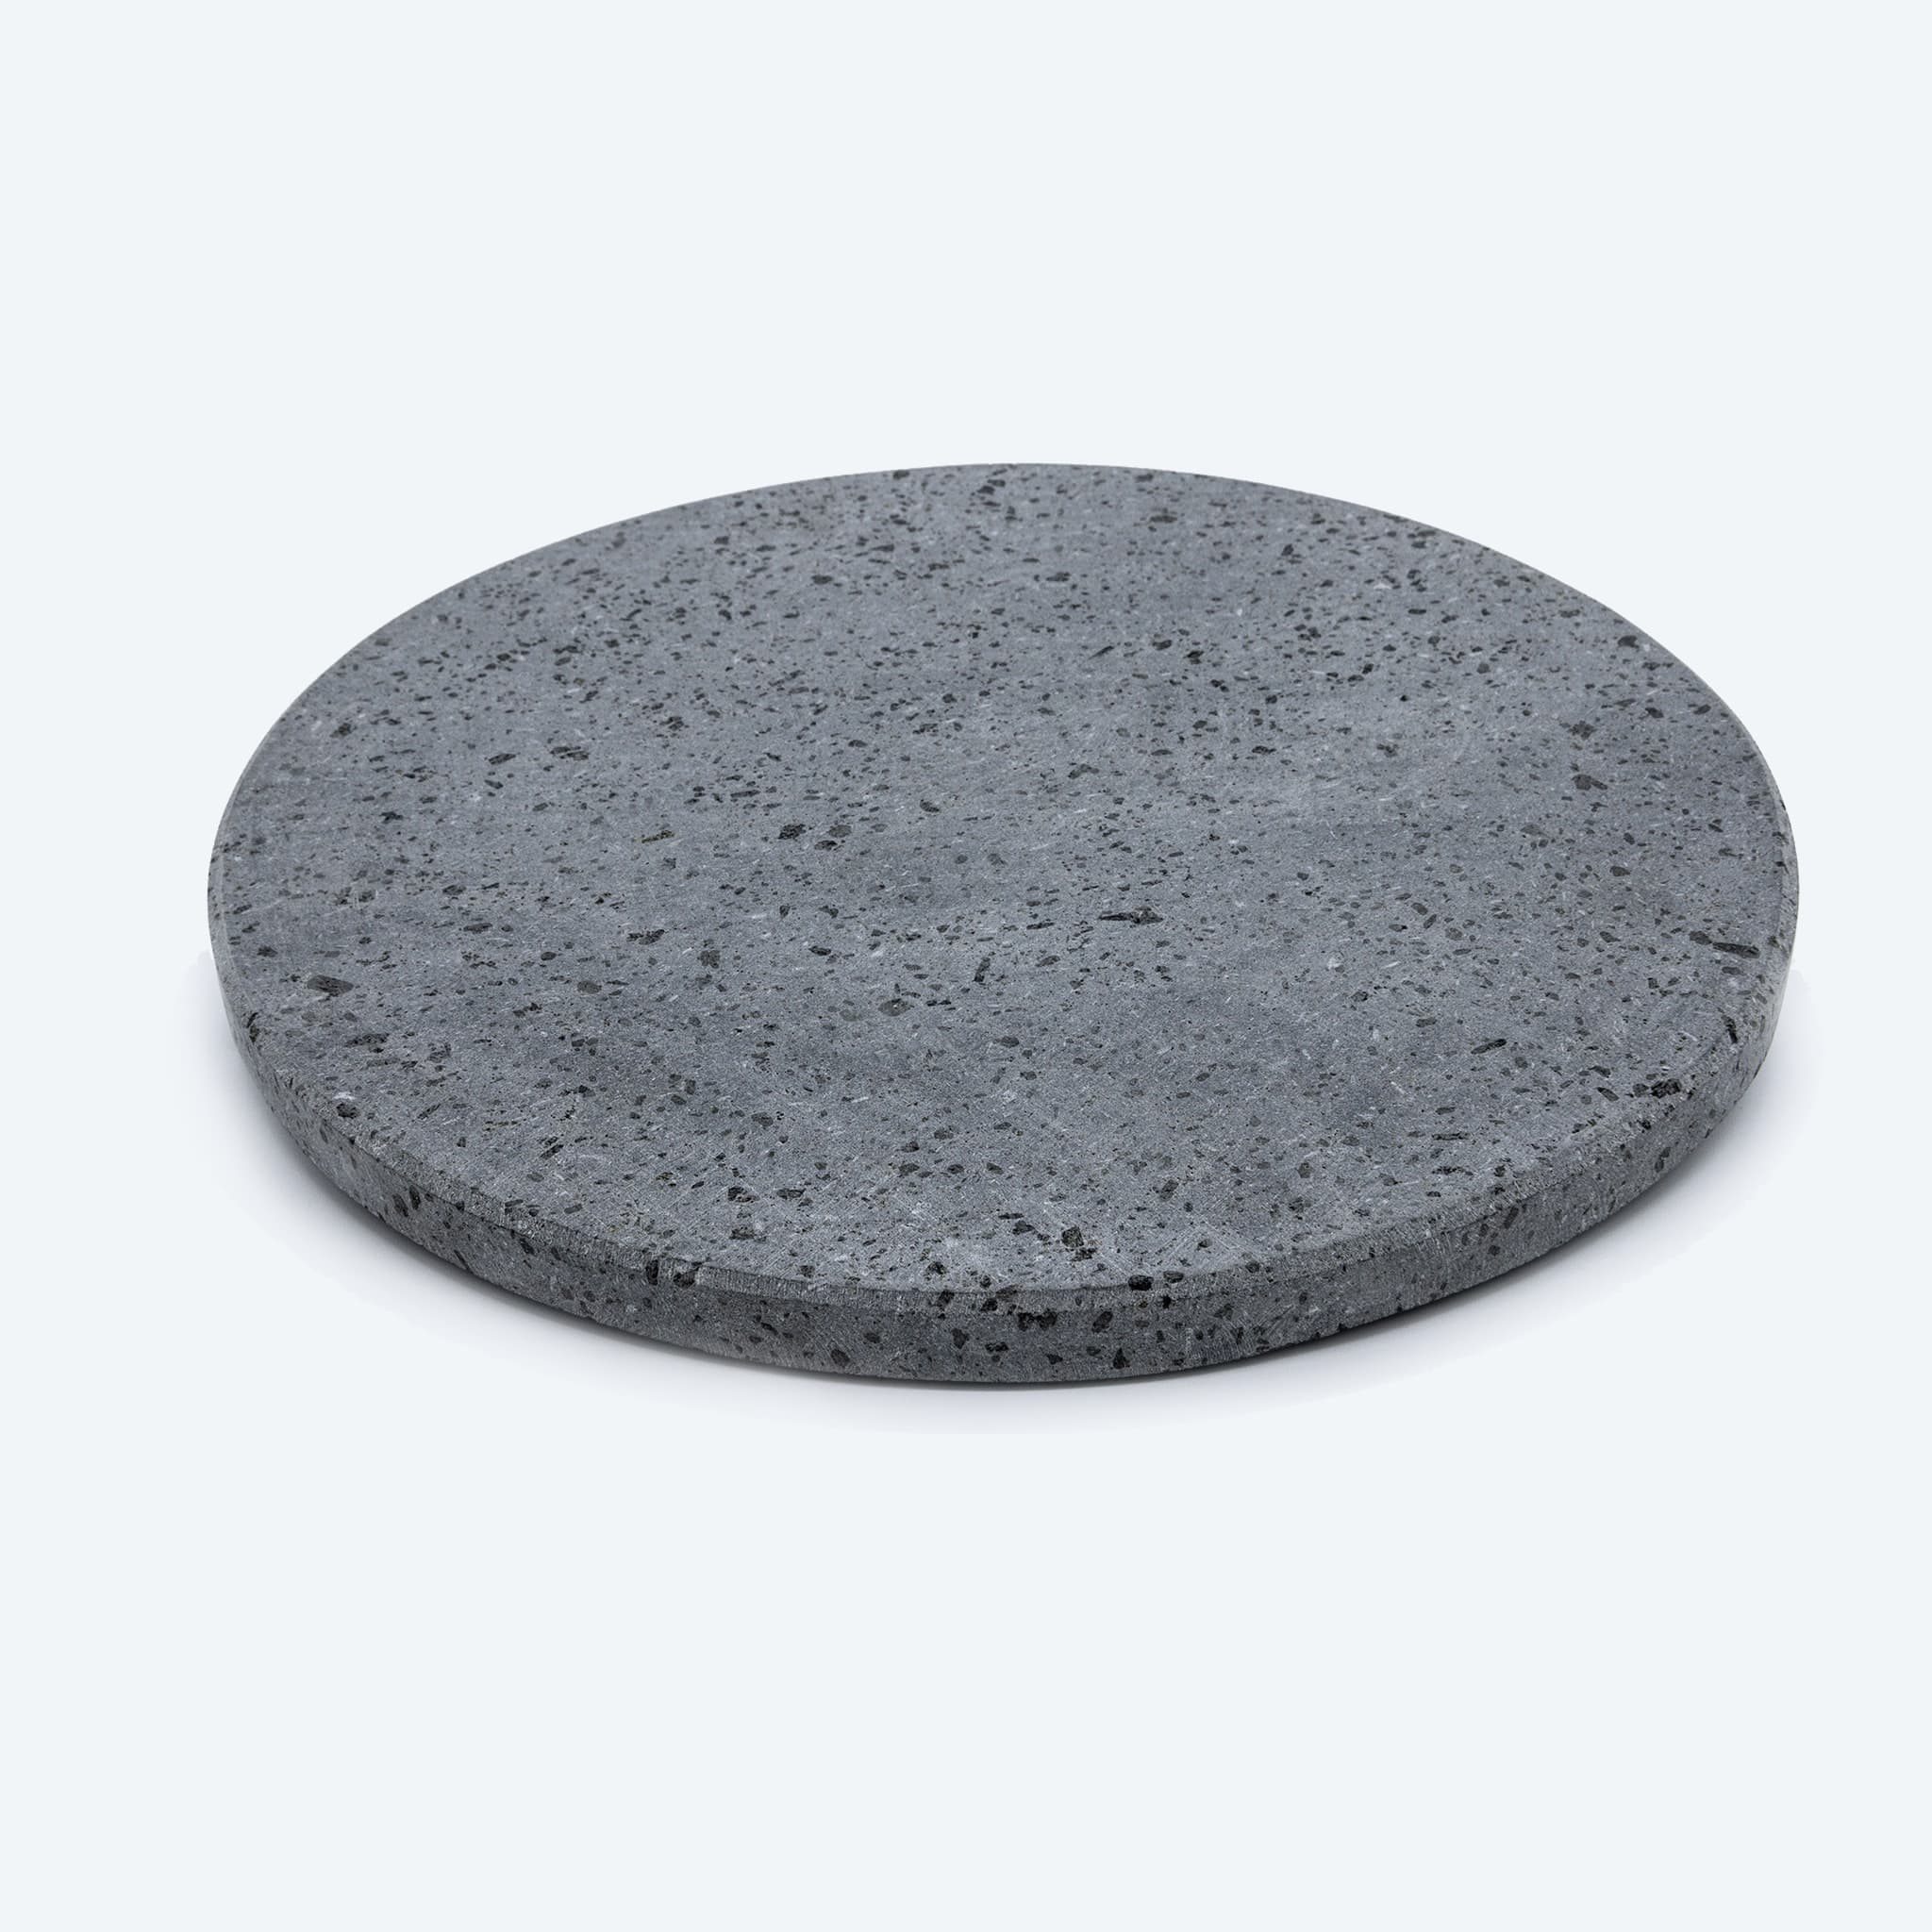 Feuerfeste Lavasteinplatte für runde Pizzen (Durchmesser 35 cm